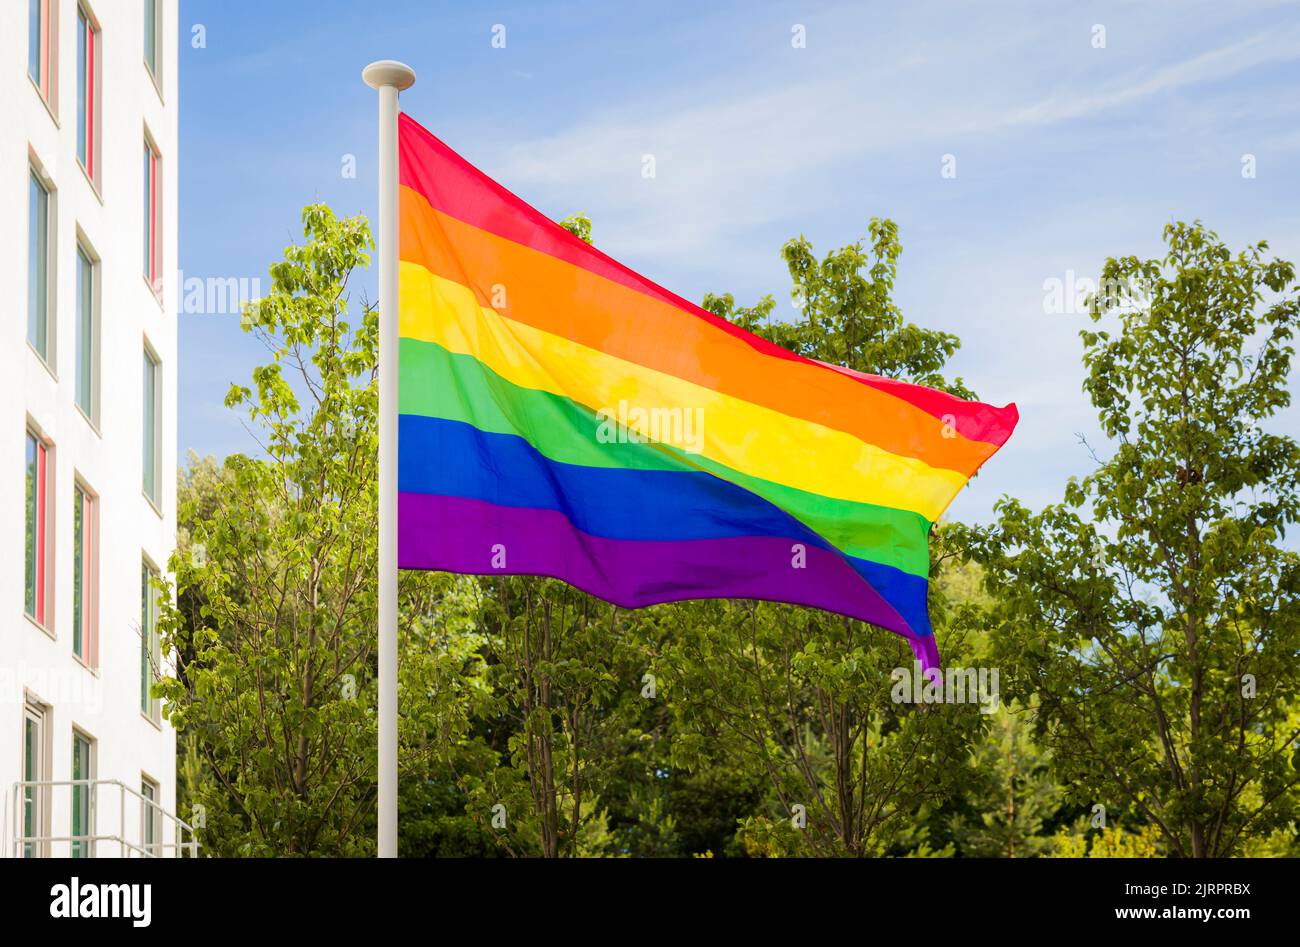 Bandiera gay Pride (bandiera arcobaleno), simbolo della diversità LBGT, che vola su un flagpole a Bournemouth, Regno Unito Foto Stock